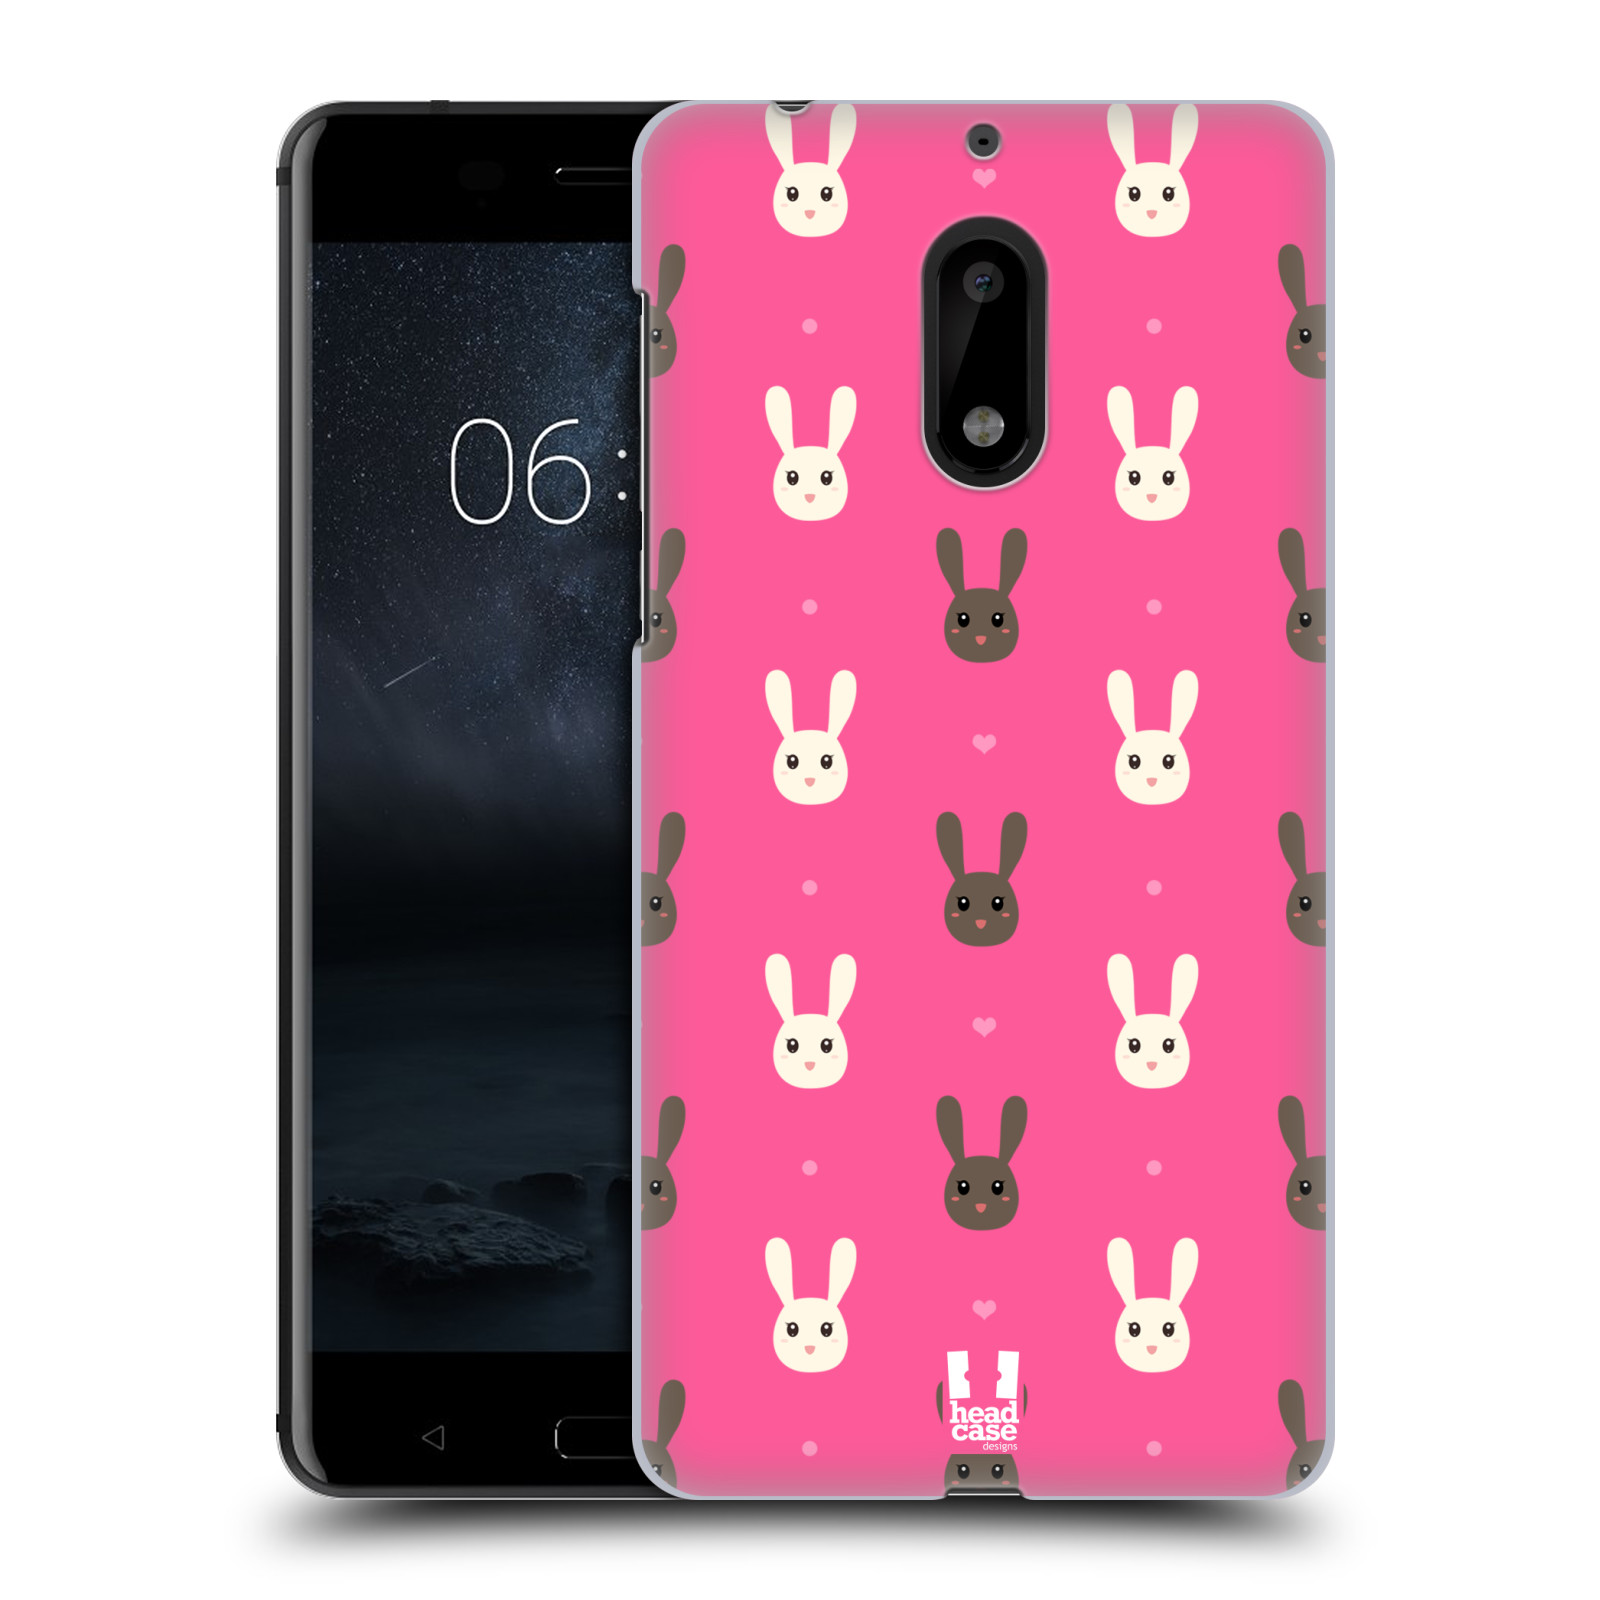 HEAD CASE plastový obal na mobil Nokia 6 vzor Barevní zajíčci RŮŽOVÁ hnědý a bílý králíček